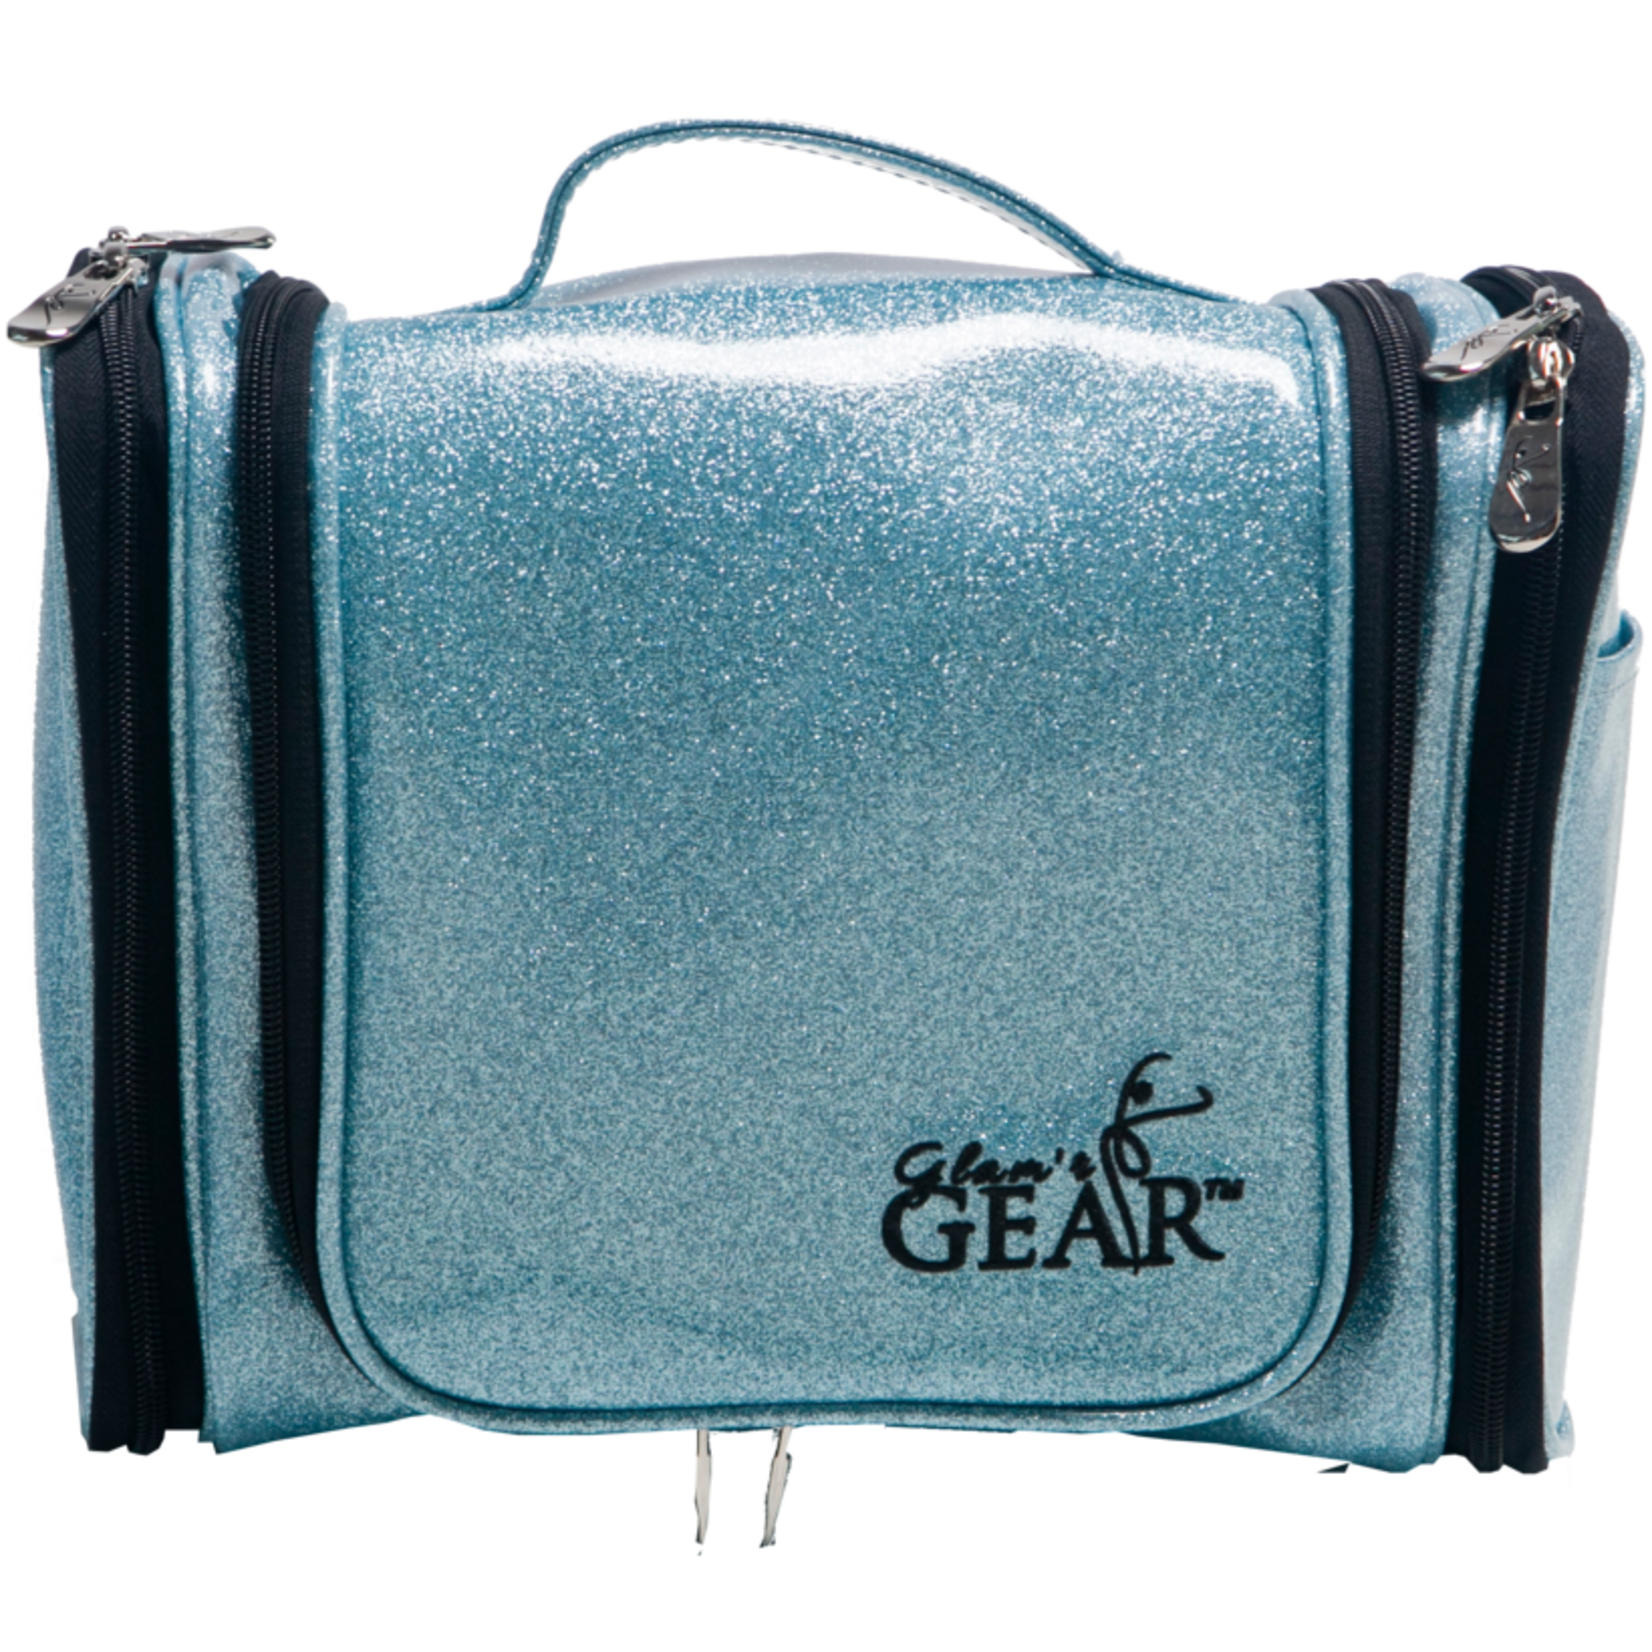 Glam’r Gear Glam’r Gear Hanging Cosmetics Bag